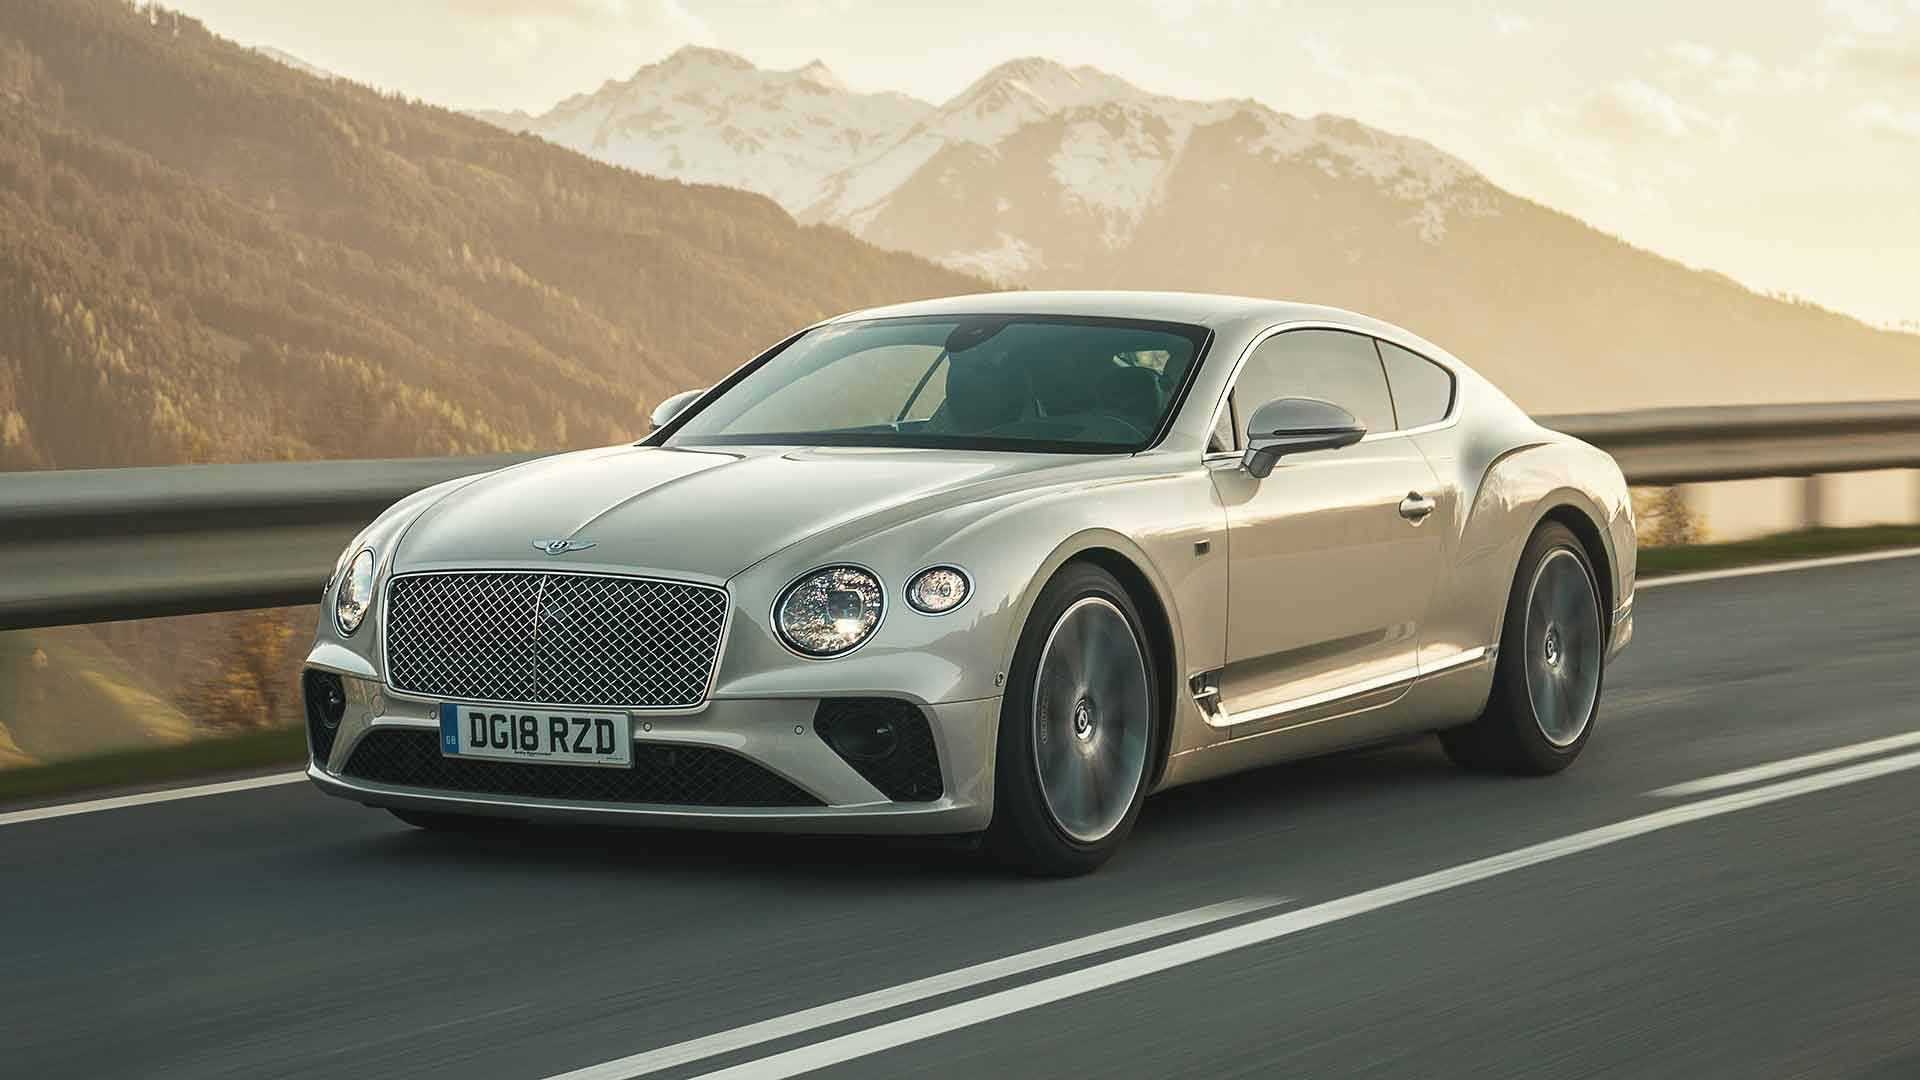 Bentley continental gt: технические характеристики, разгон, максимальная скорость, фото, видео - вики суперкары